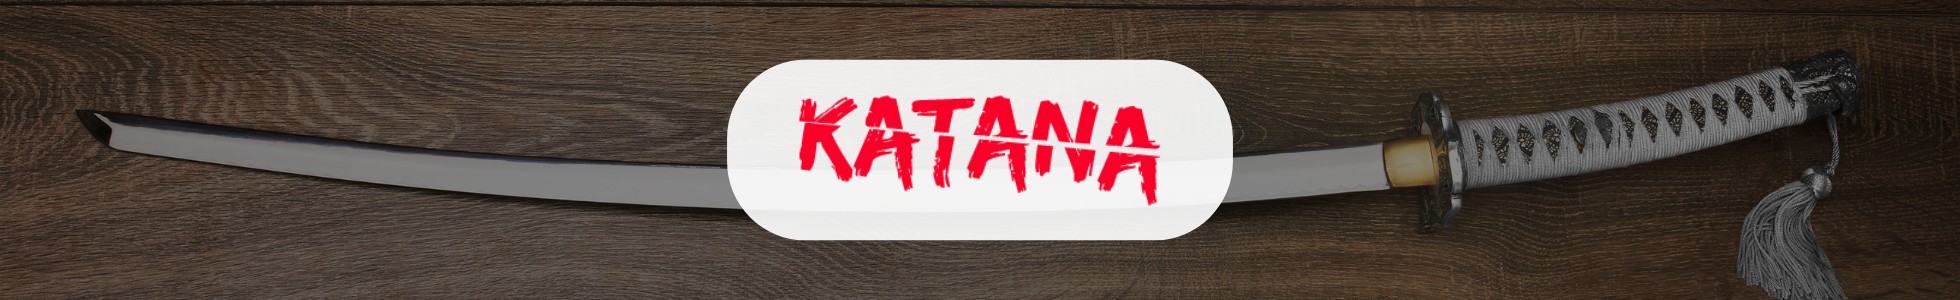 Katana.cc - Shop online katane